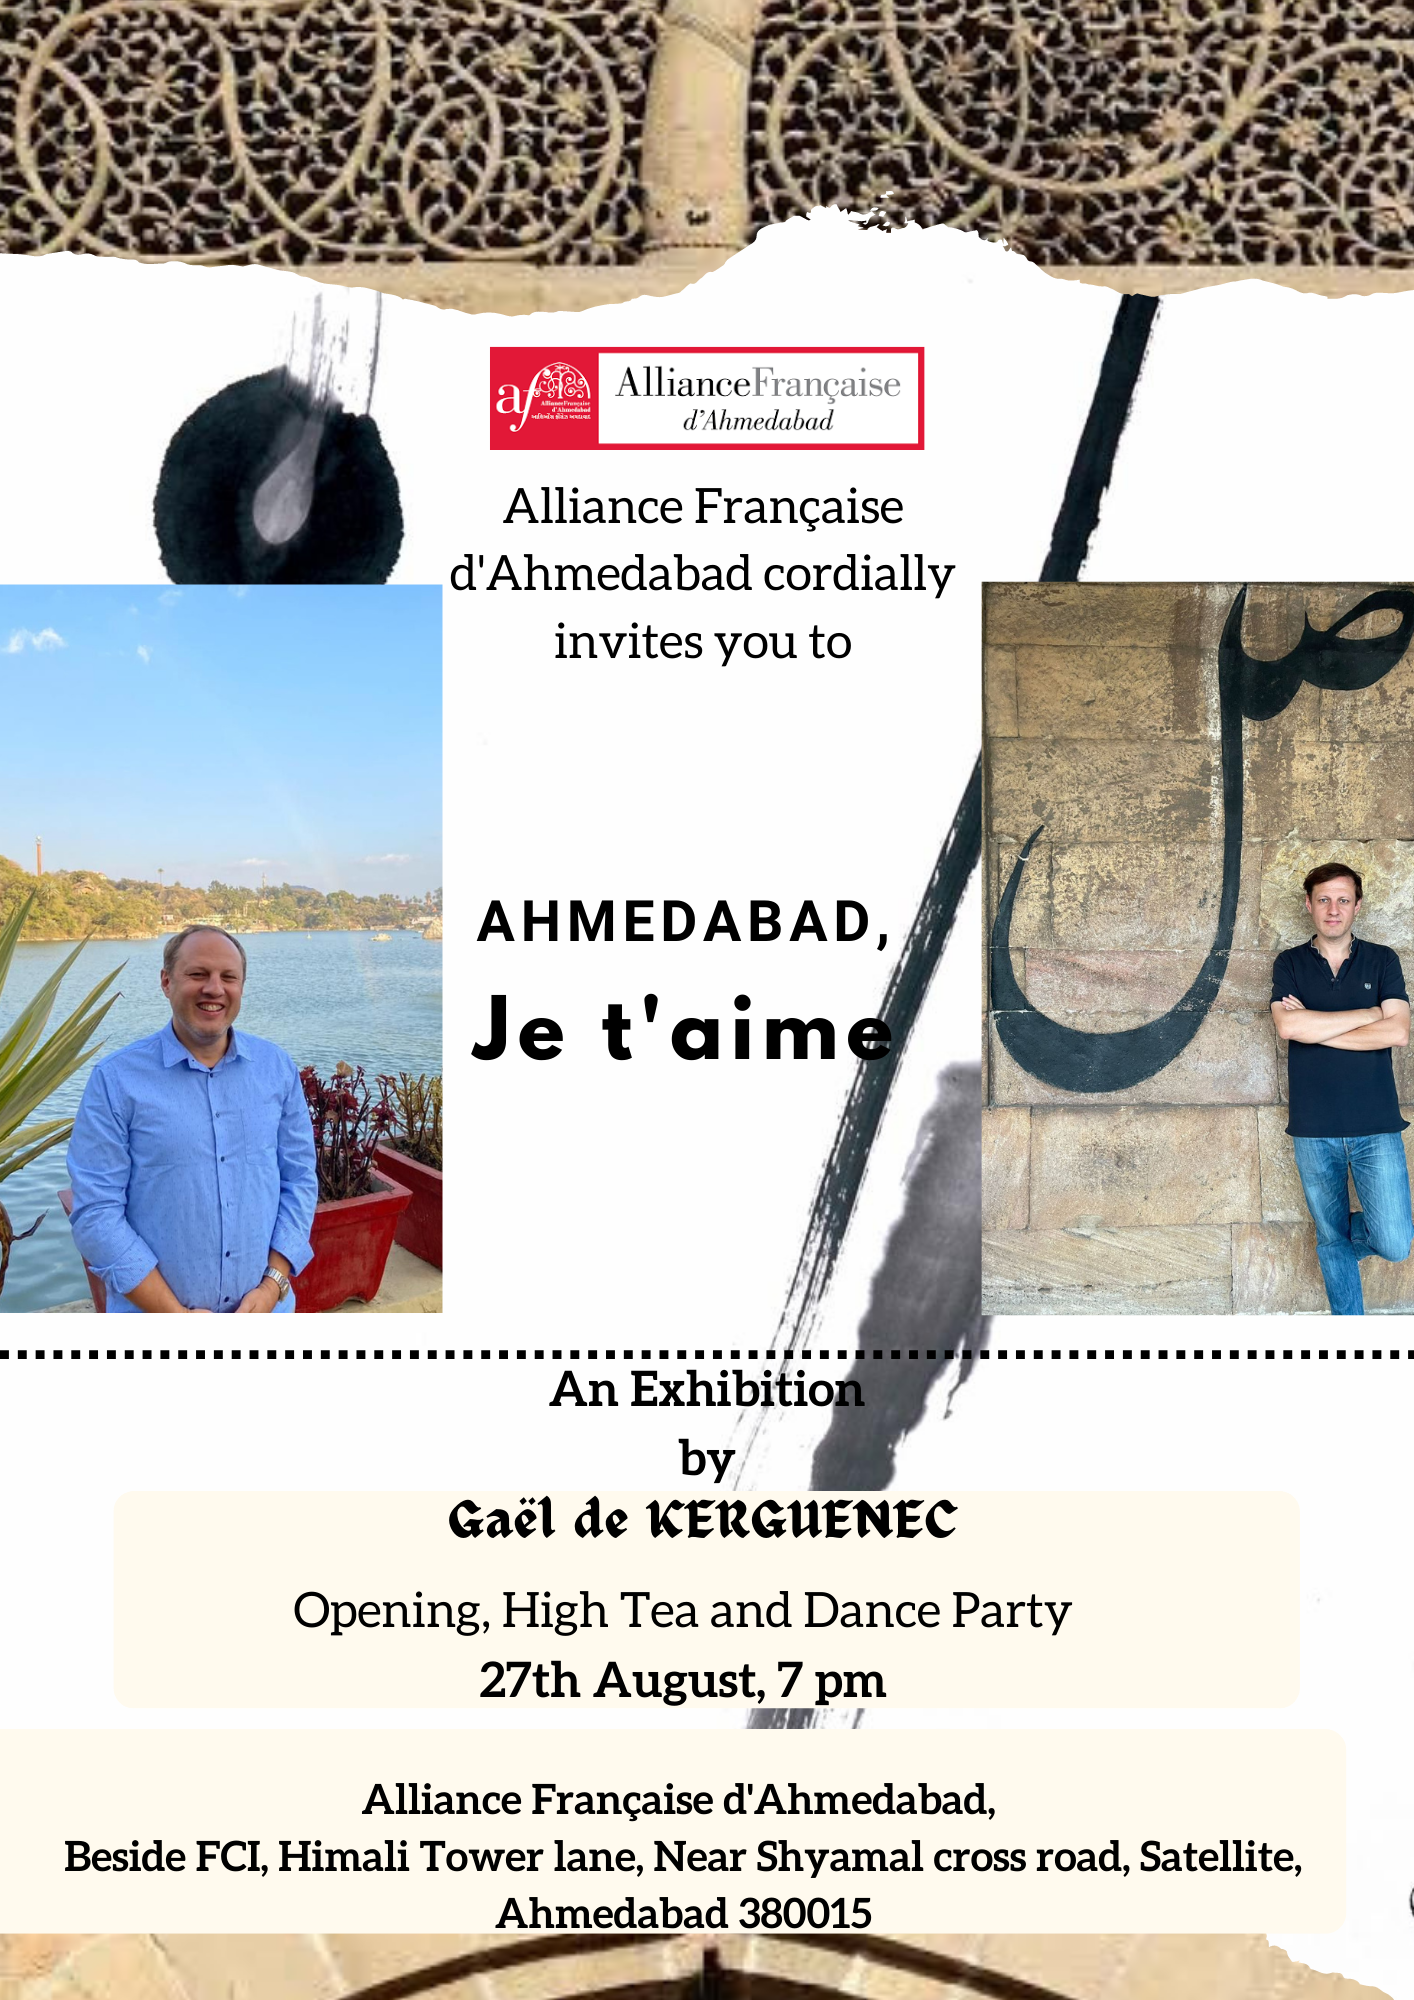 Ahmedabad, Je t'aime: An Art Exhibition by Gaël de KERGUENEC!